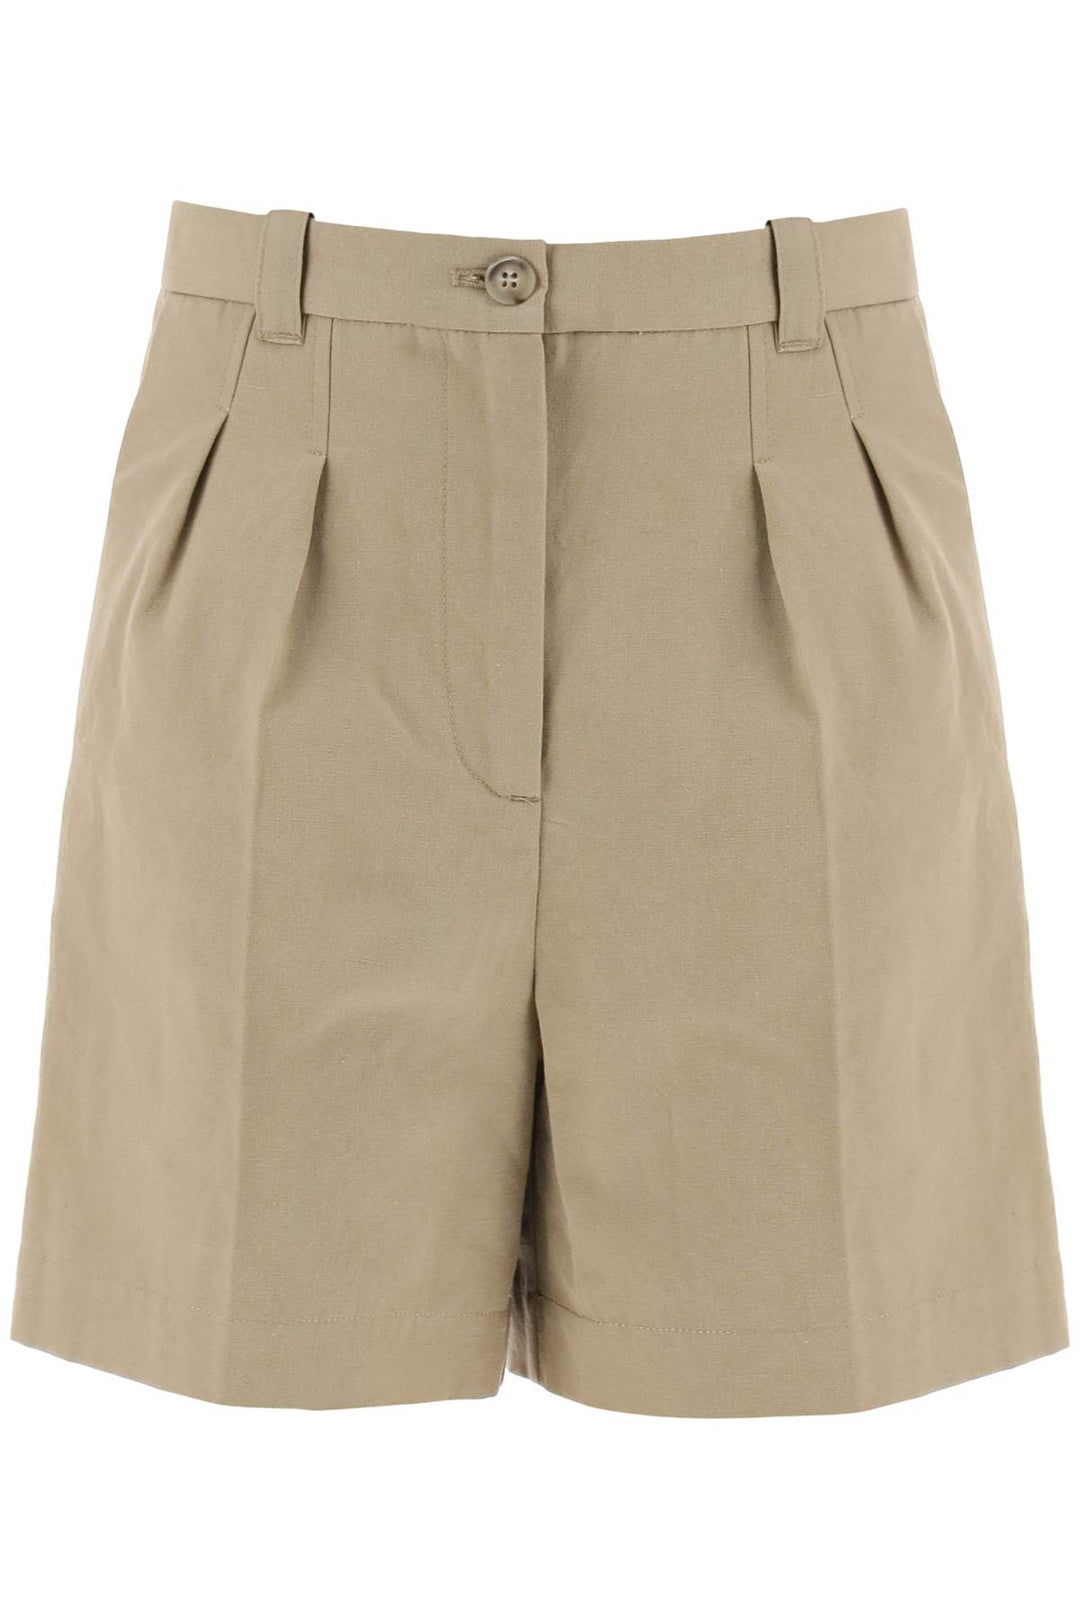 A.P.C. Cotton And Linen Nola Shorts For   Beige